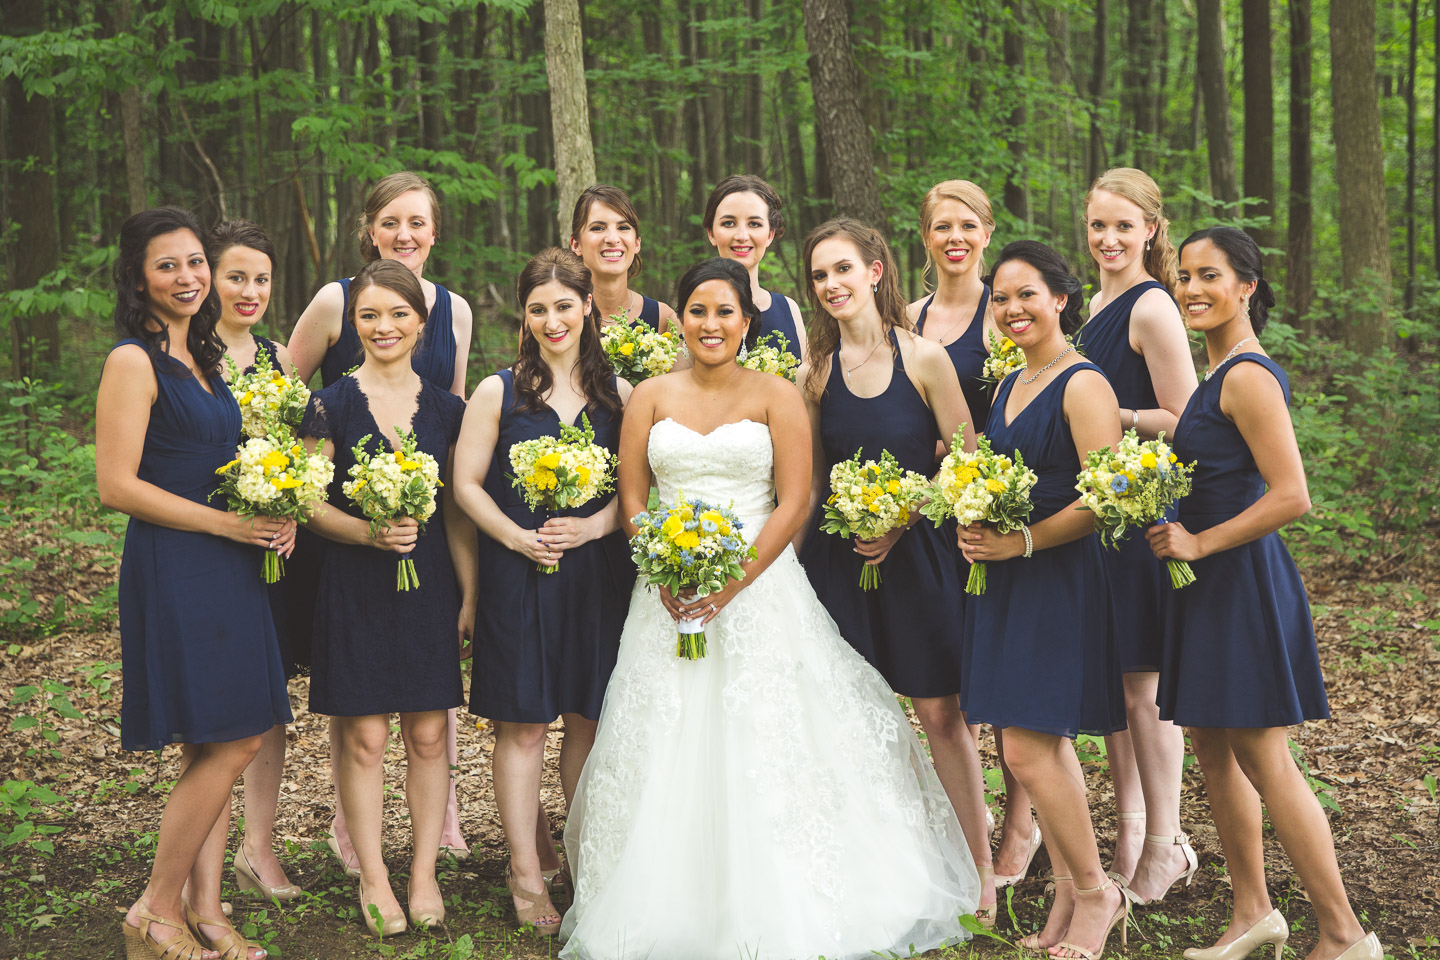 birmingham-michigan-southfield-bride-bridesmaids-group-portrait-forest